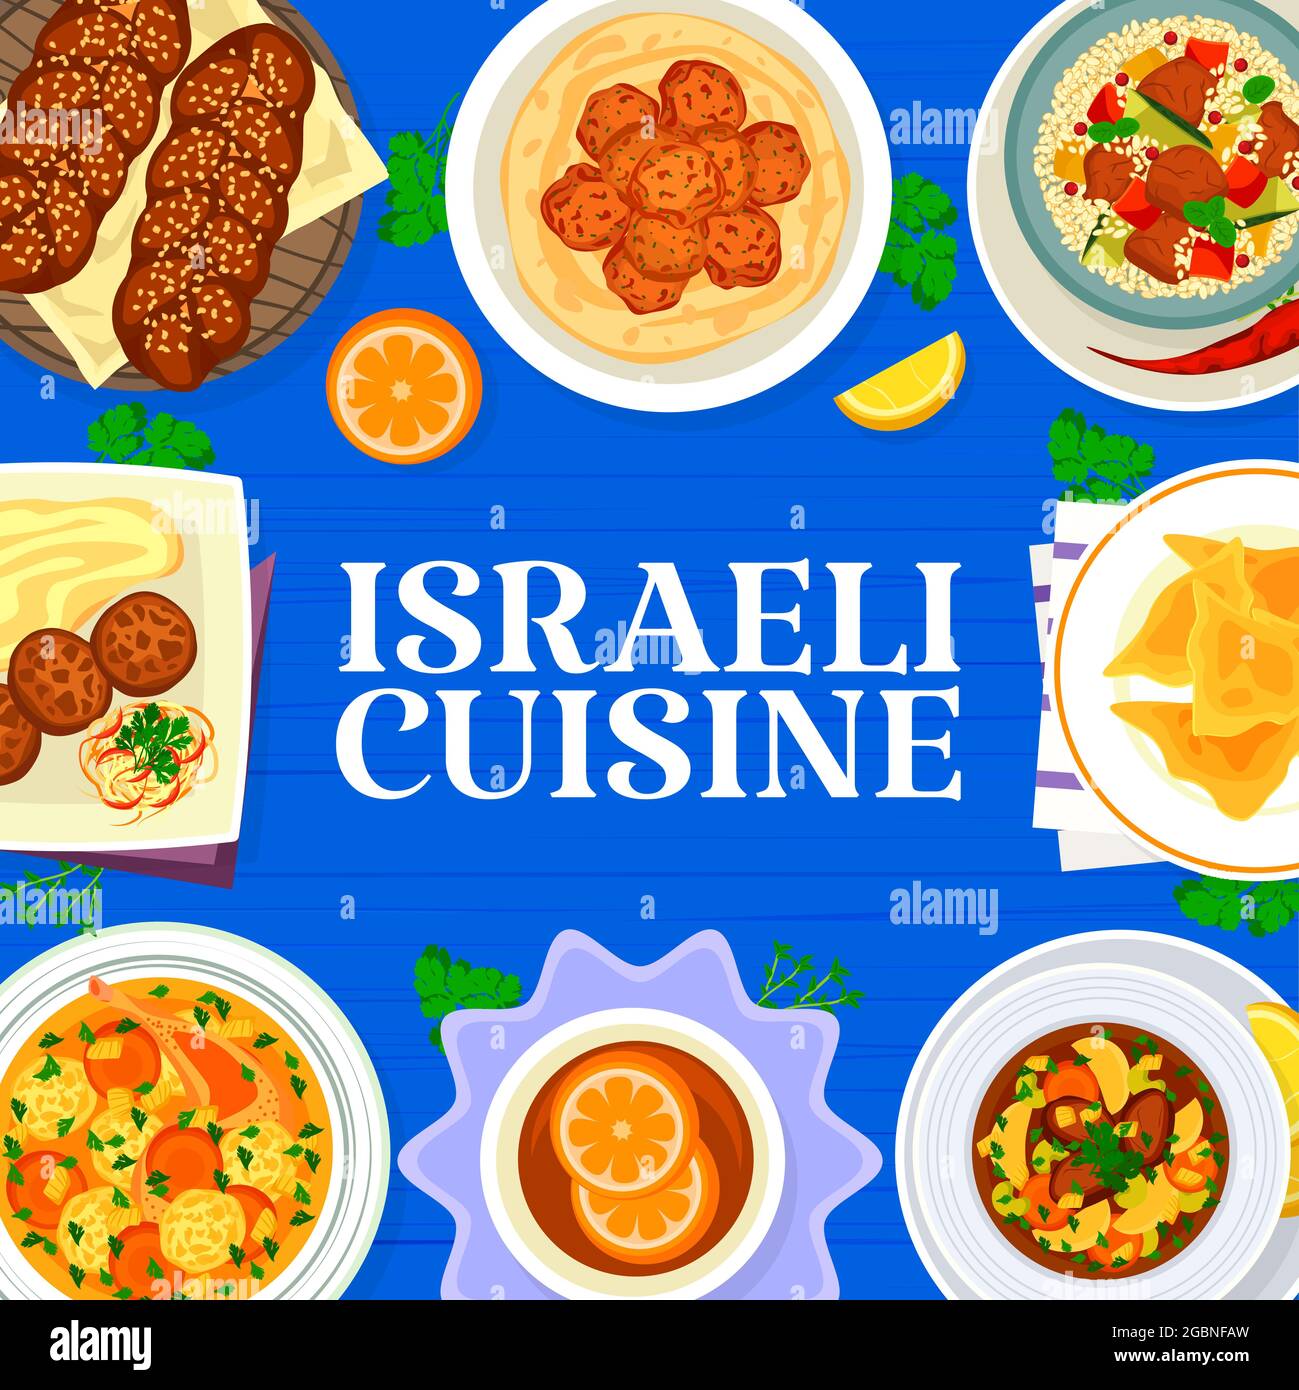 Couverture du menu de cuisine israélienne. Soupe juive au matzo-ball, falafels aux pois chiches et boulettes de bœuf, krechach au pain sucré, gâteaux au poulet et couscou à l'agneau Illustration de Vecteur